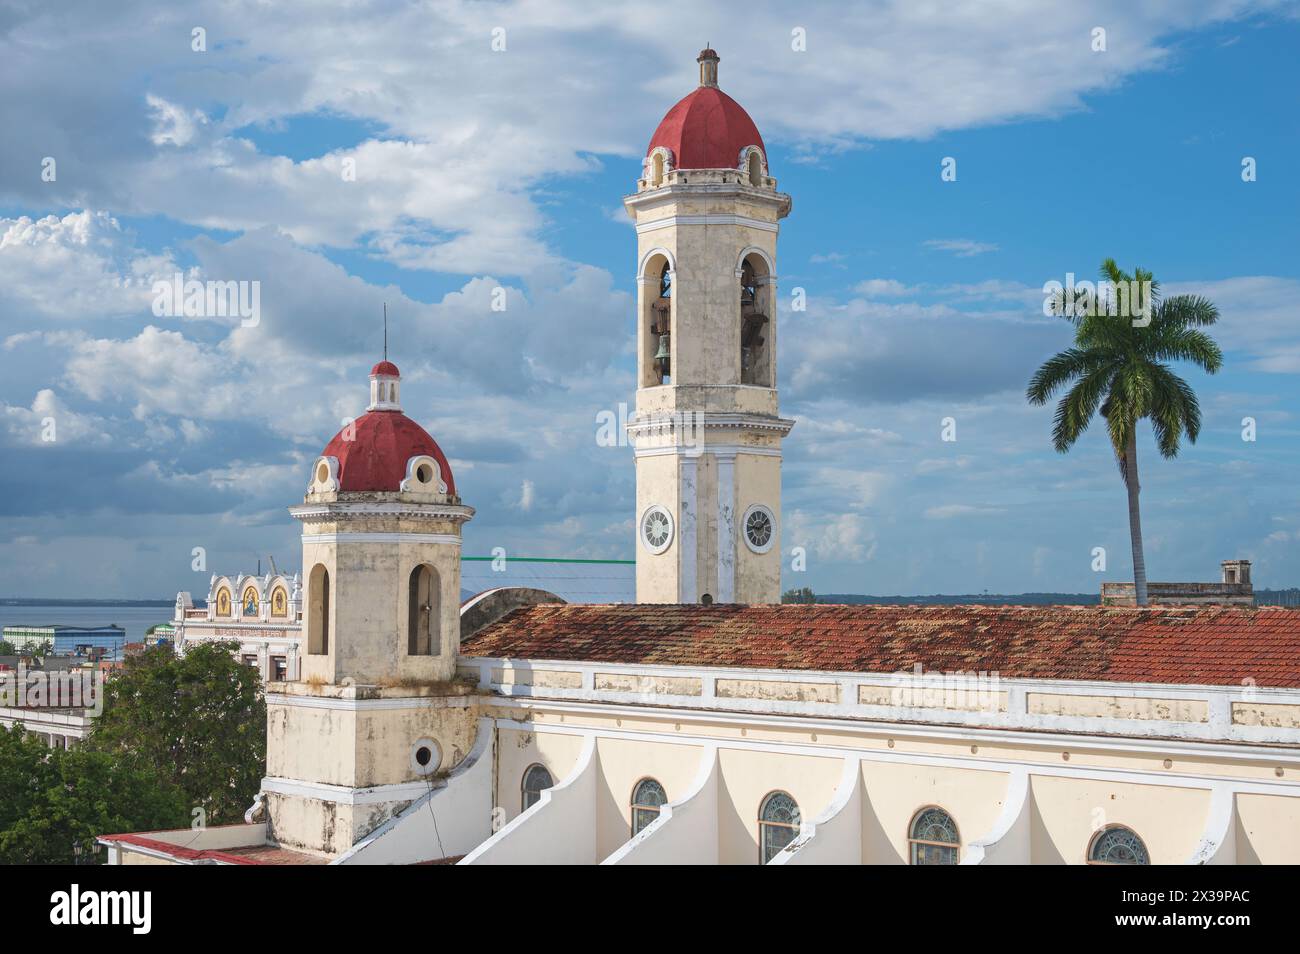 Cathédrale de Cienfuegos, surplombant Parques Jose Marti, Cienfuegos, Cuba Banque D'Images